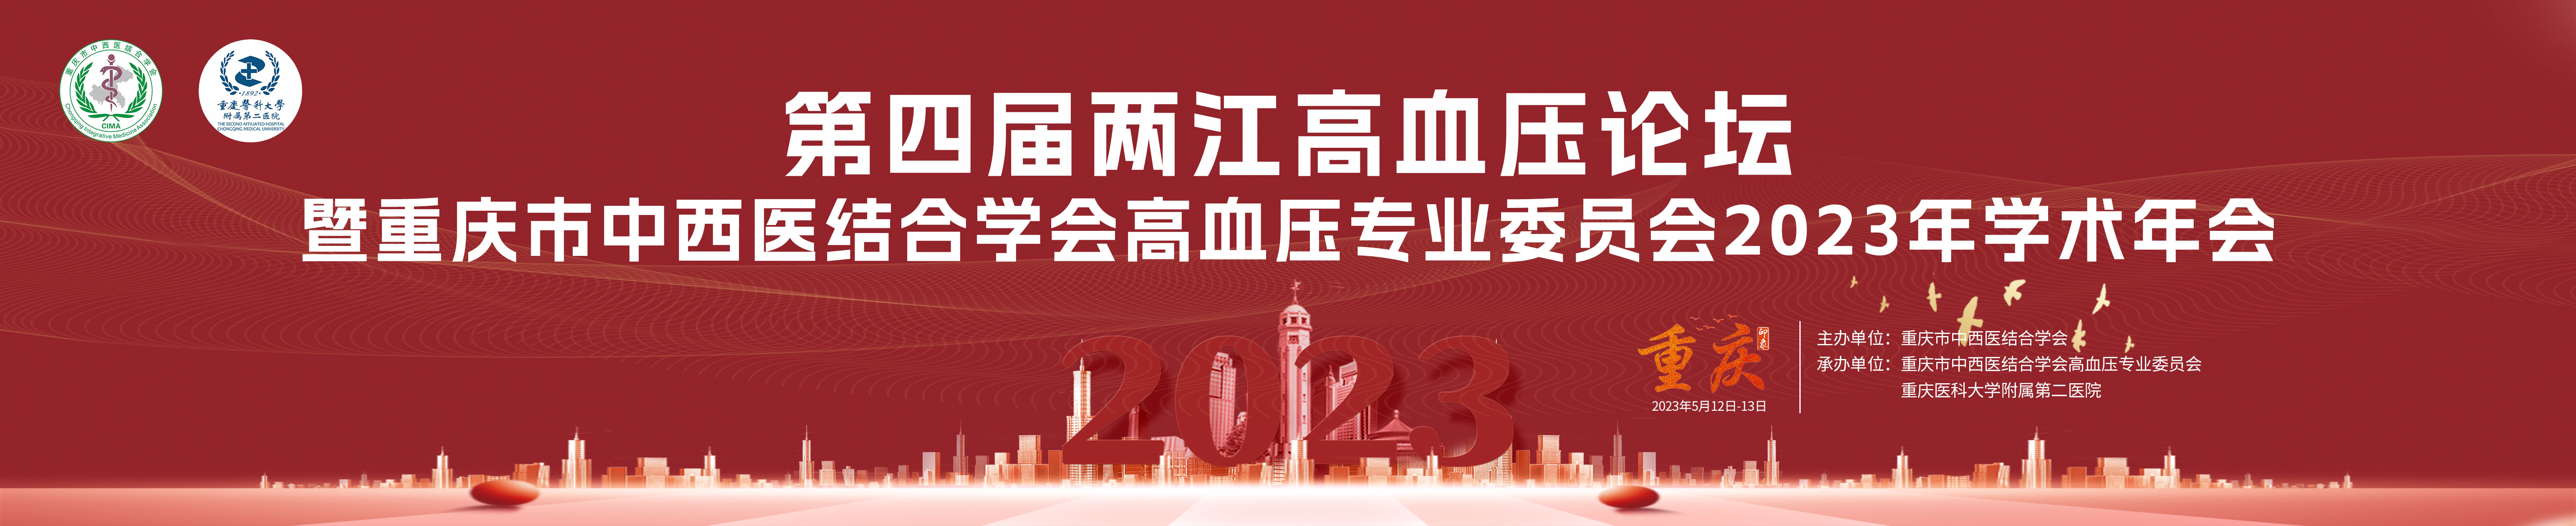 第四届两江高血压论坛暨重庆市中西医结合学会高血压专委会2023年学术年会